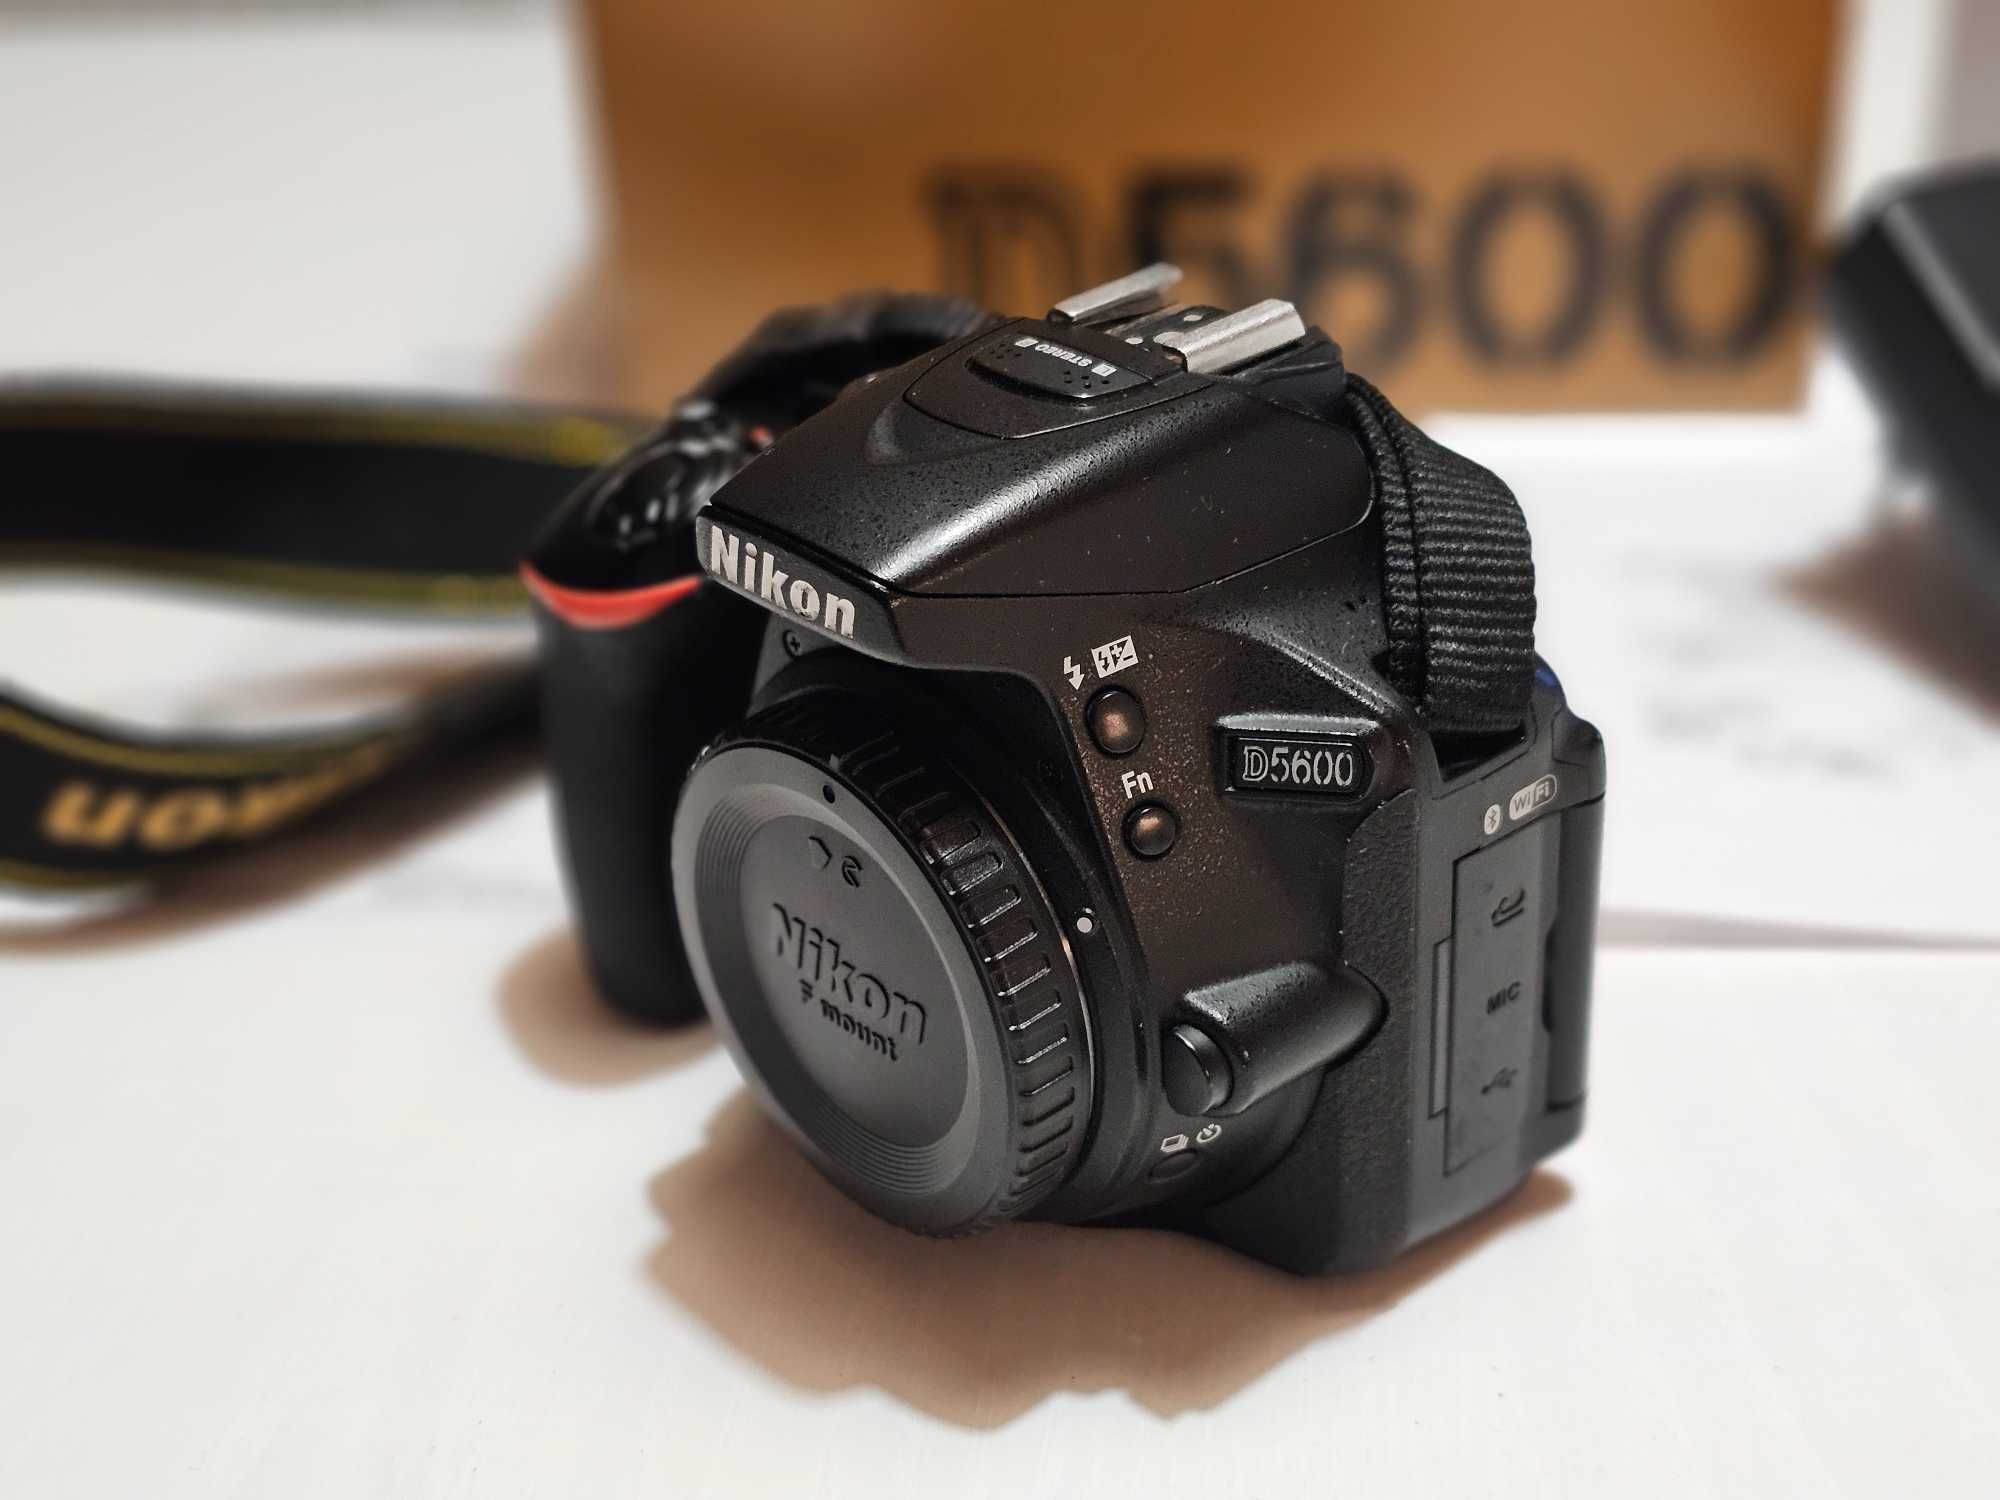 Lustrzanka Nikon D5600 zestaw okazja najtaniej torba mały przebieg